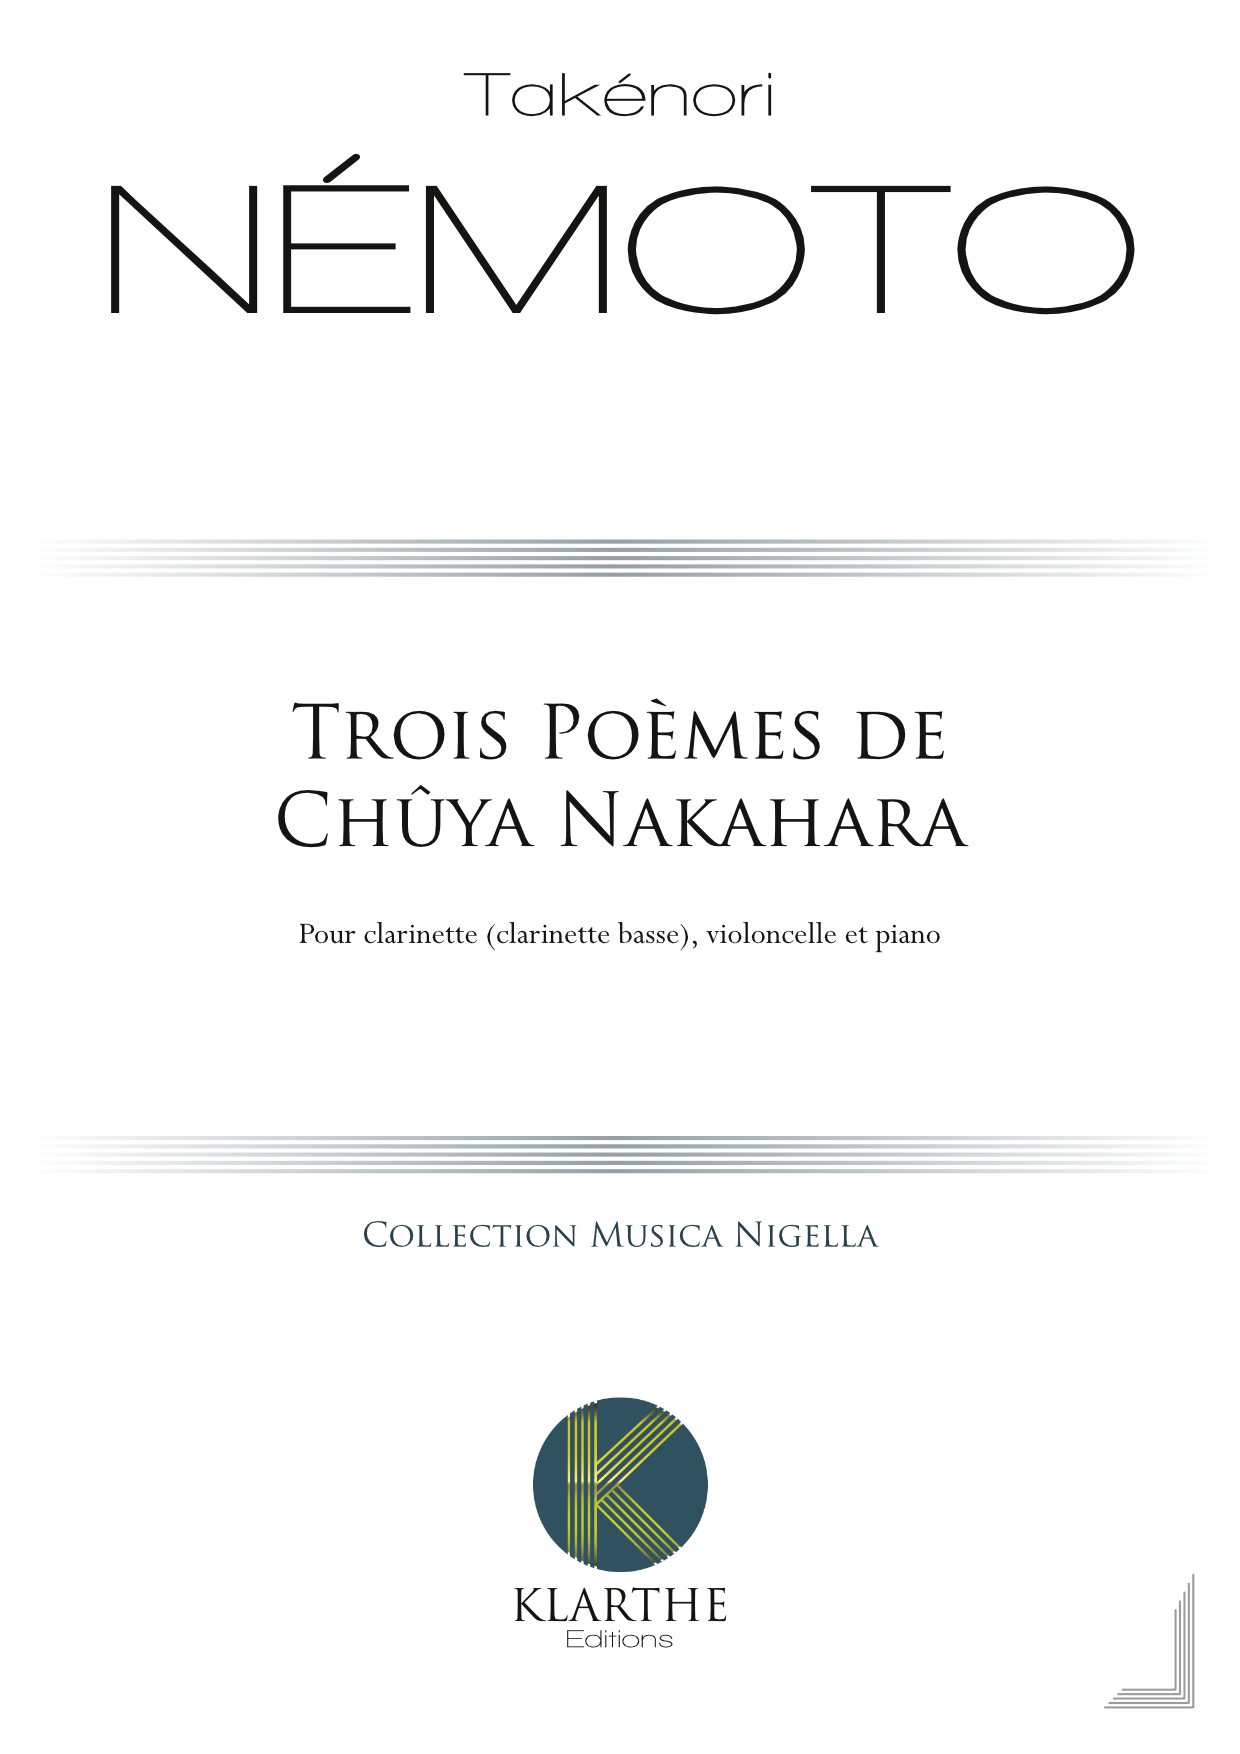 Trois Poèmes de Chûya Nakahara (NEMOTO TAKENORI)